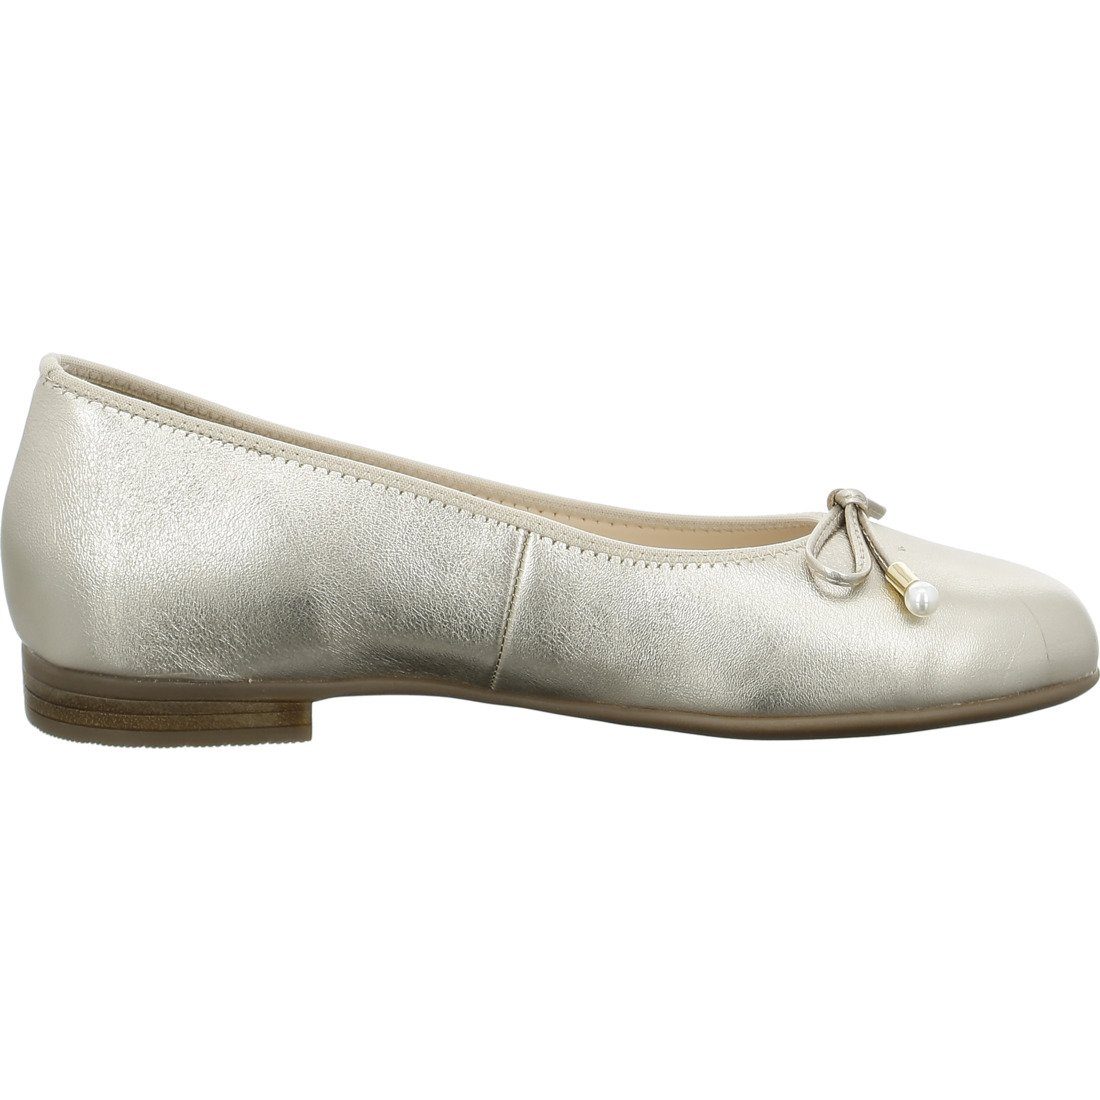 Ara Ara Schuhe, Ballerina Ballerina - 048110 Rauleder Damen Sardinia beige